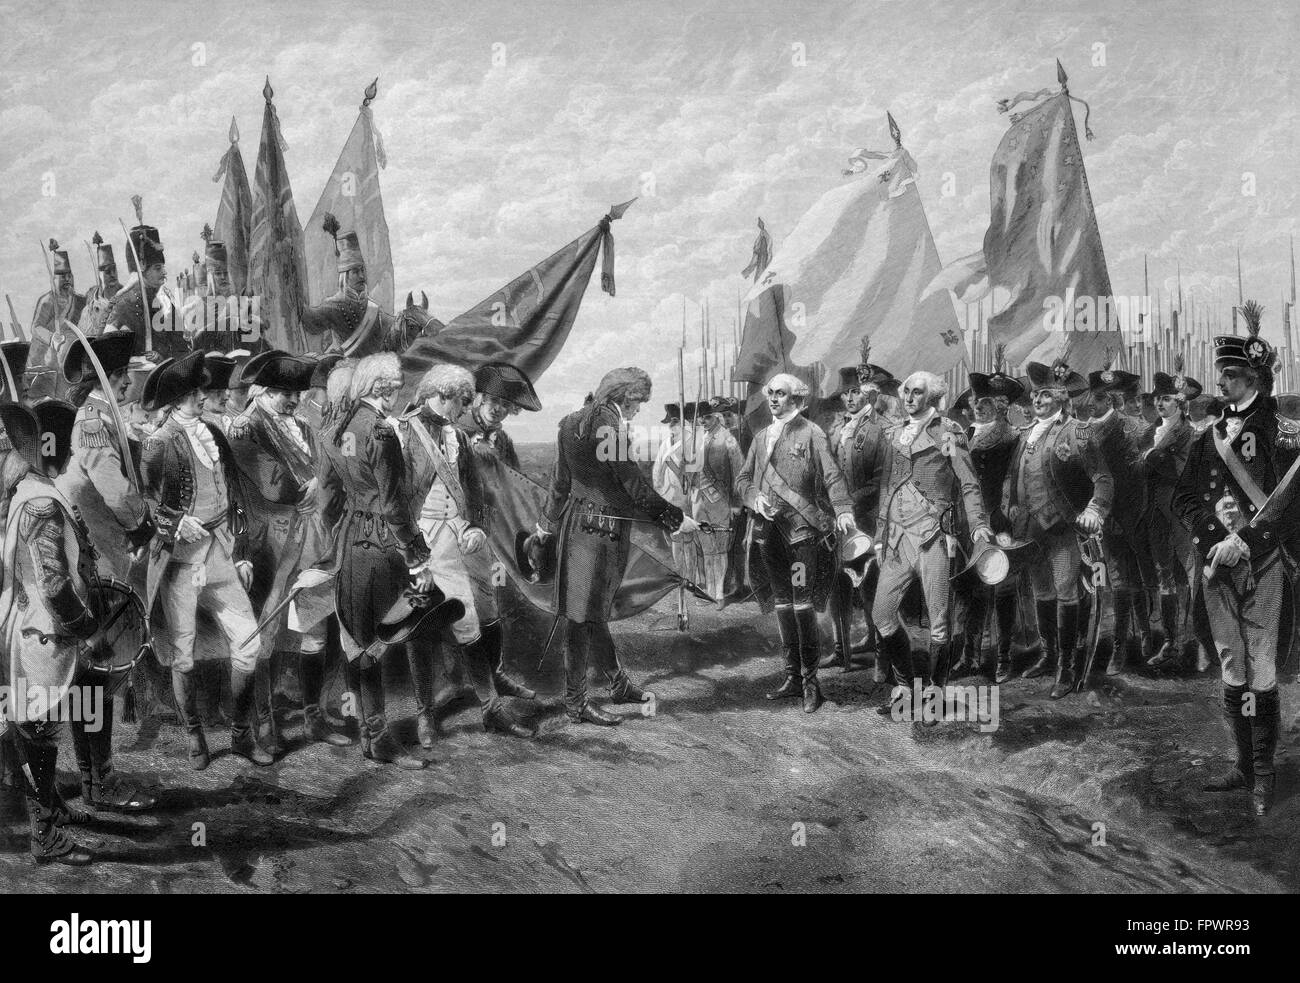 Vintage guerra rivoluzionaria che mostra di stampa la resa delle truppe britanniche al generale George Washington e l'esercito continentale. Foto Stock